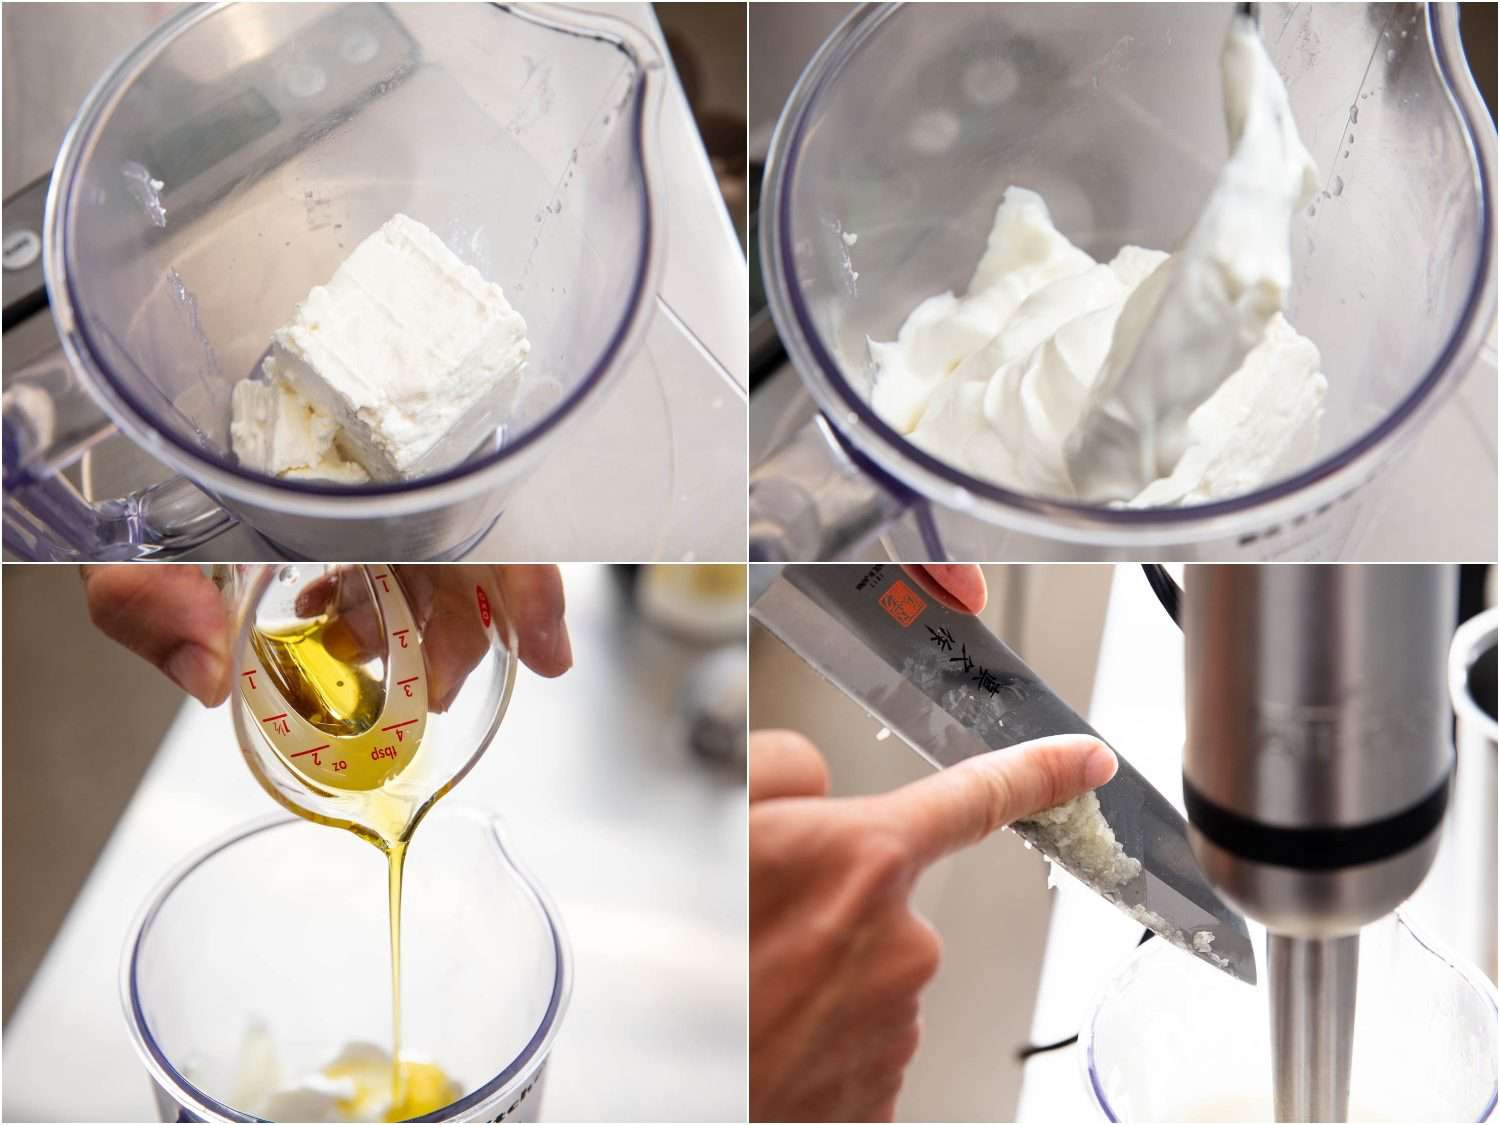 这一系列图片展示了将羊乳酪、希腊酸奶、橄榄油和大蒜混合在一个搅拌器罐中制成的羊乳酪酱。gydF4y2Ba